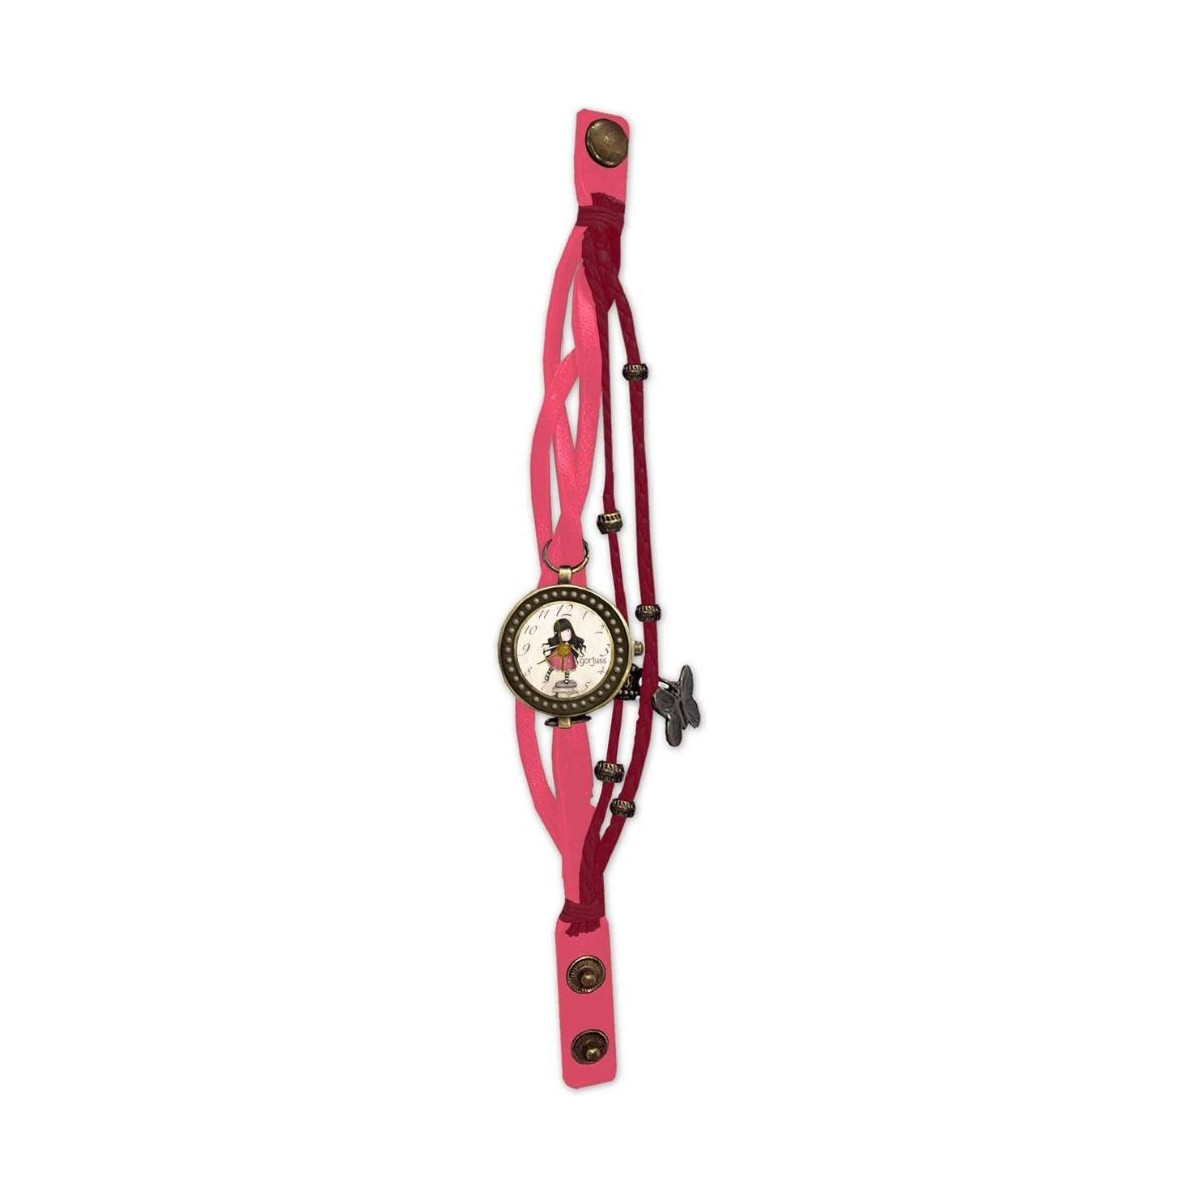 Relógios & jóias Relógios Digitais Santoro London W-07-G Rosa